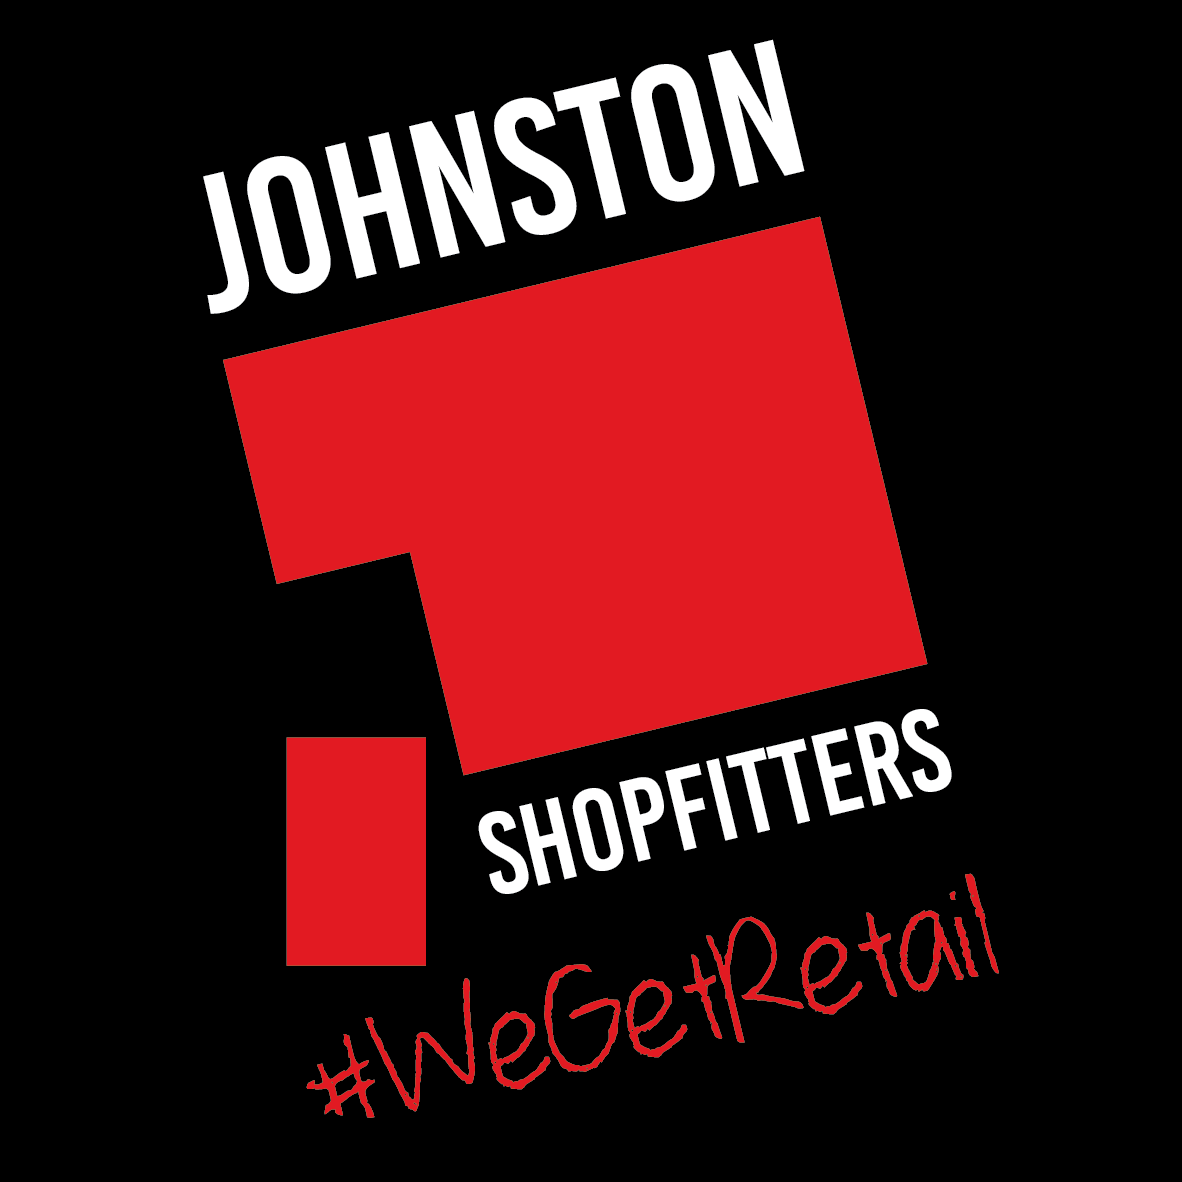 Johnston Shopfitters